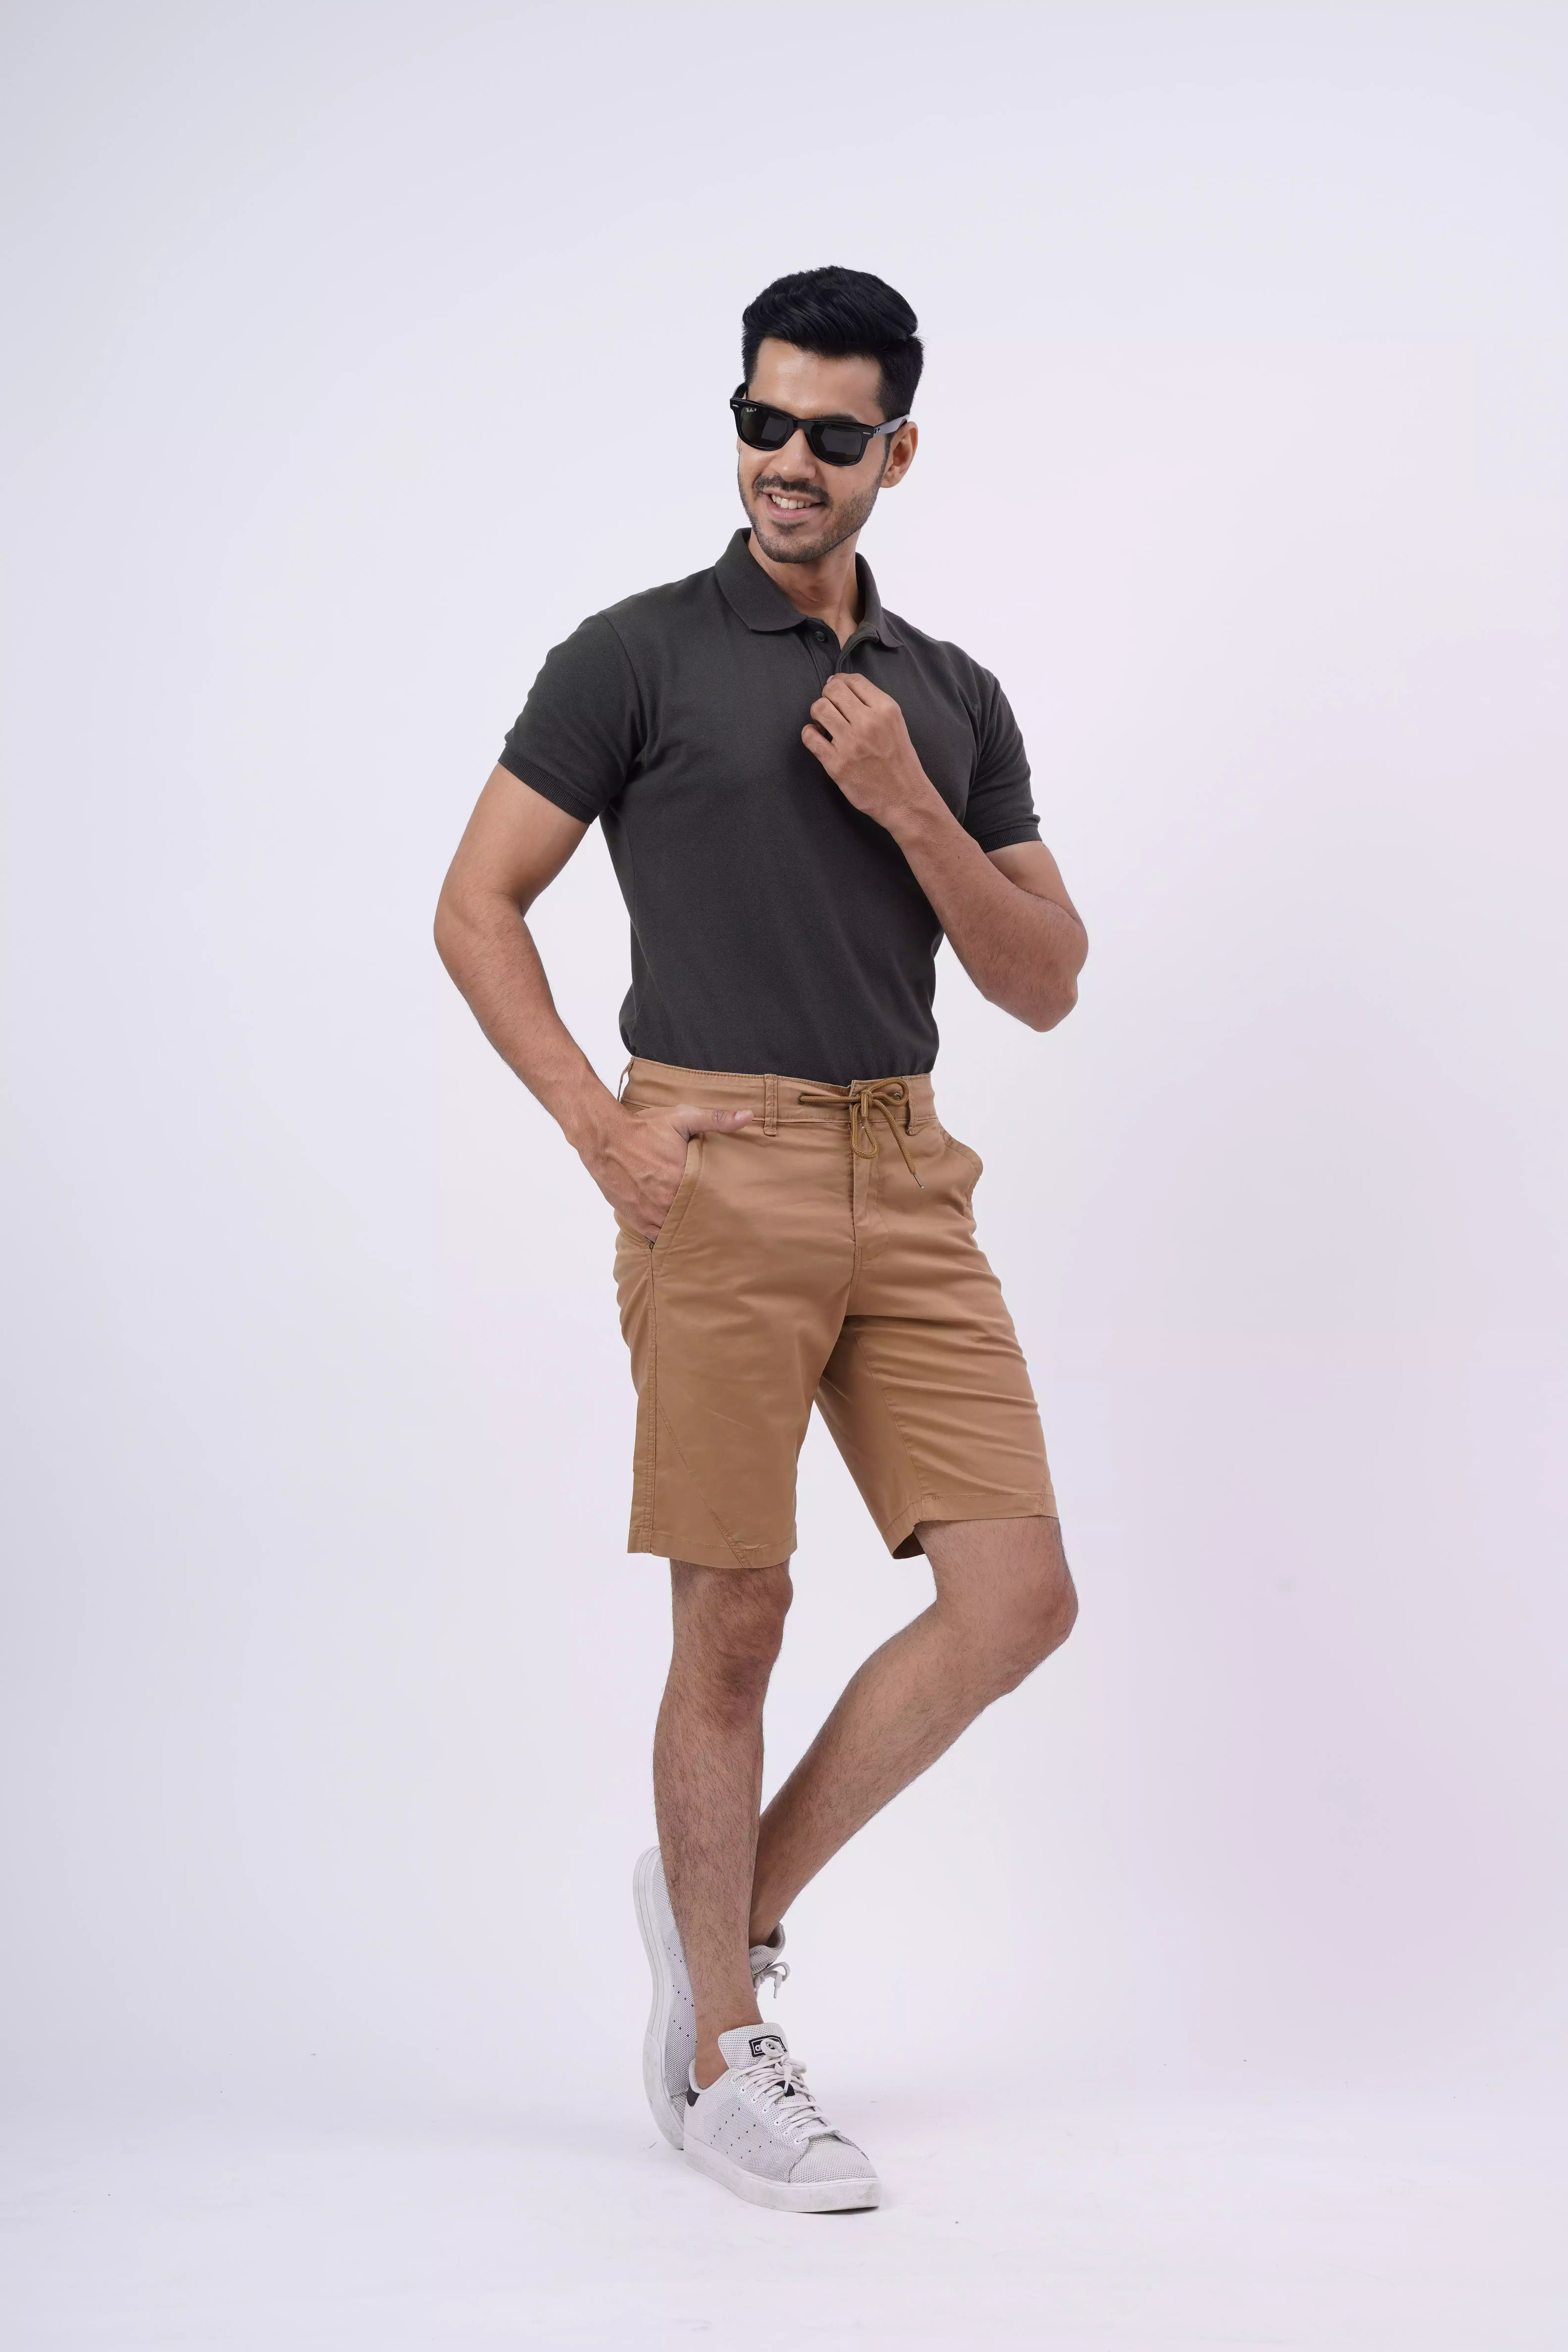 male models for e-commerce shoot in new delhi